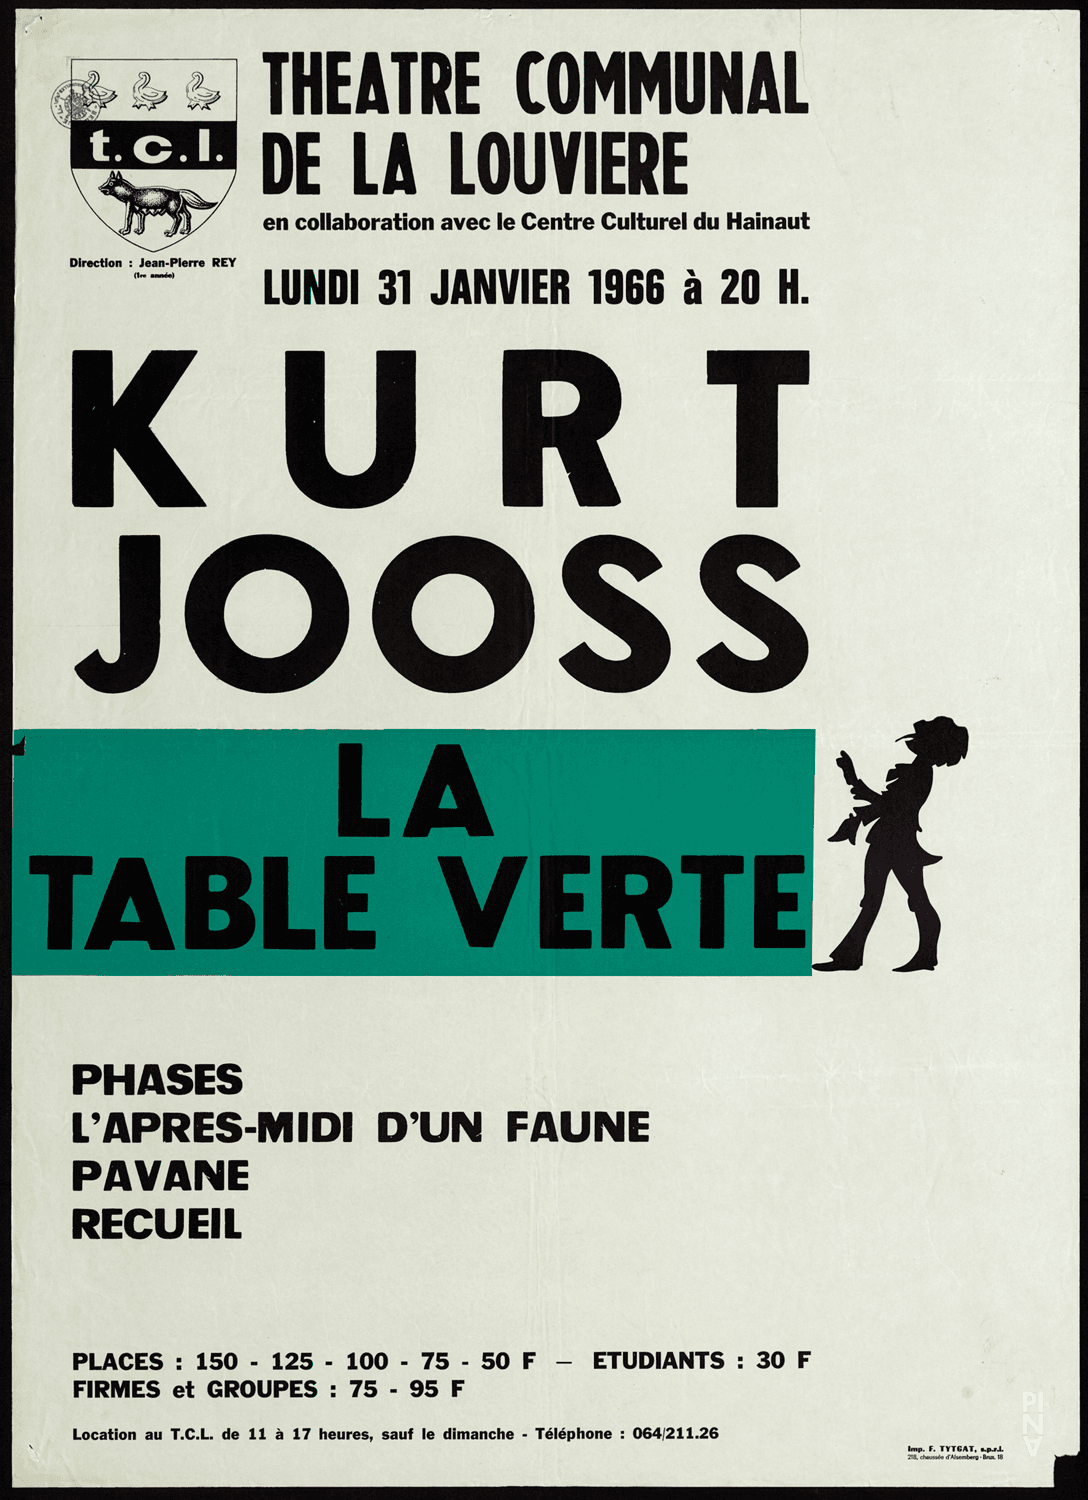 Poster for “The green Table” by Kurt Jooss in La Louvière, Jan. 31, 1966